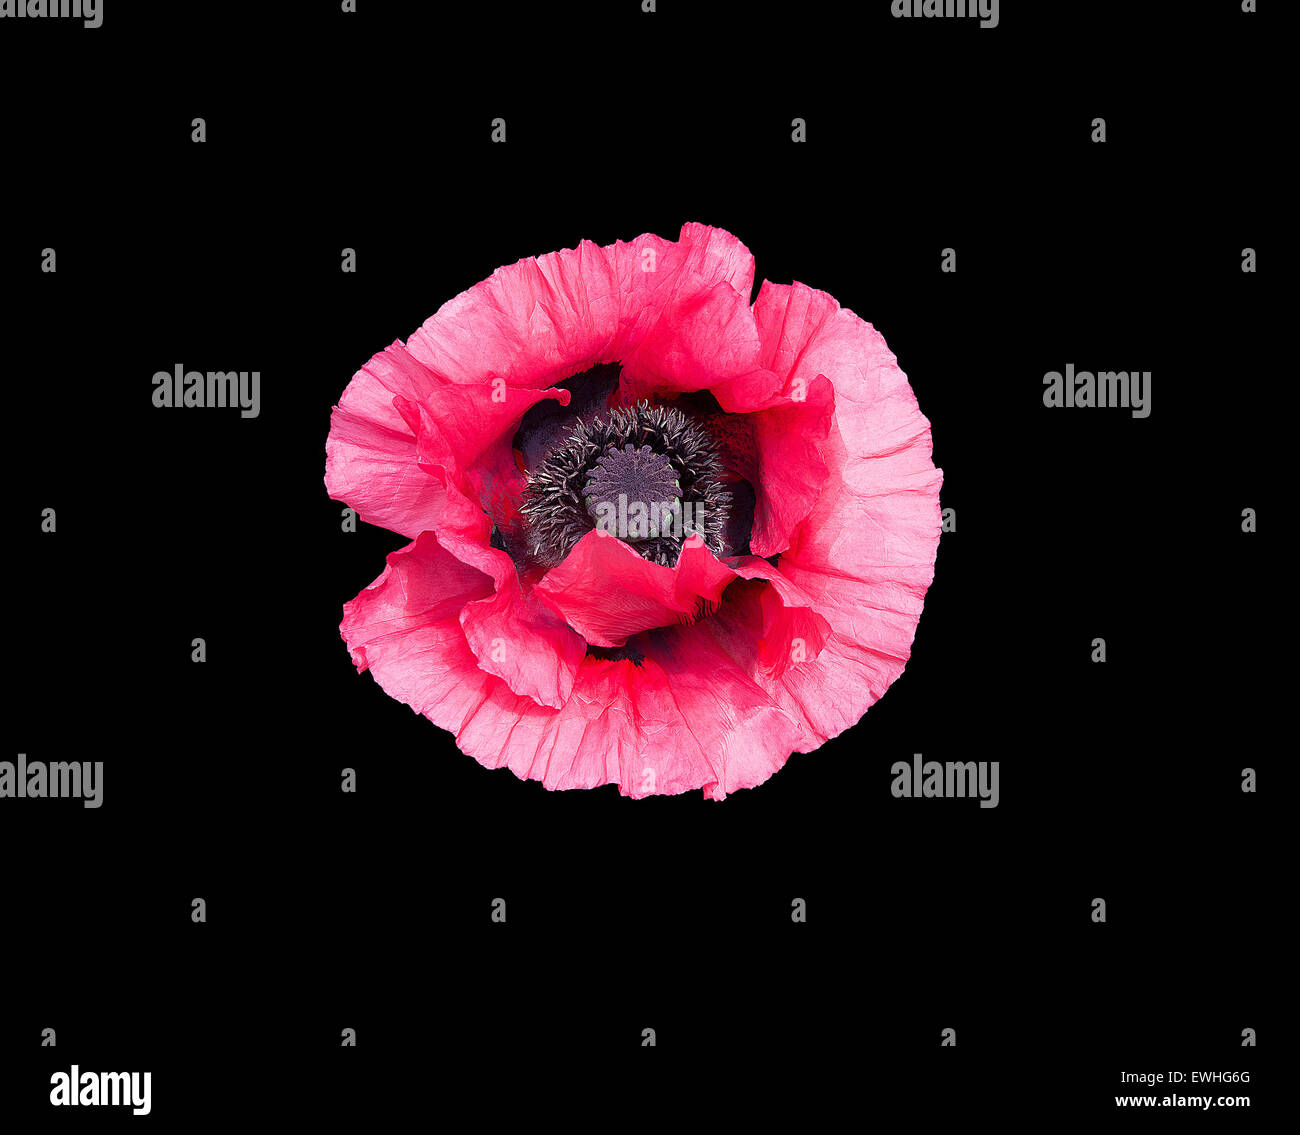 Rose fleur de pavot Papaver orientale avec des pistils noirs isolés Gros plan sur noir. Banque D'Images